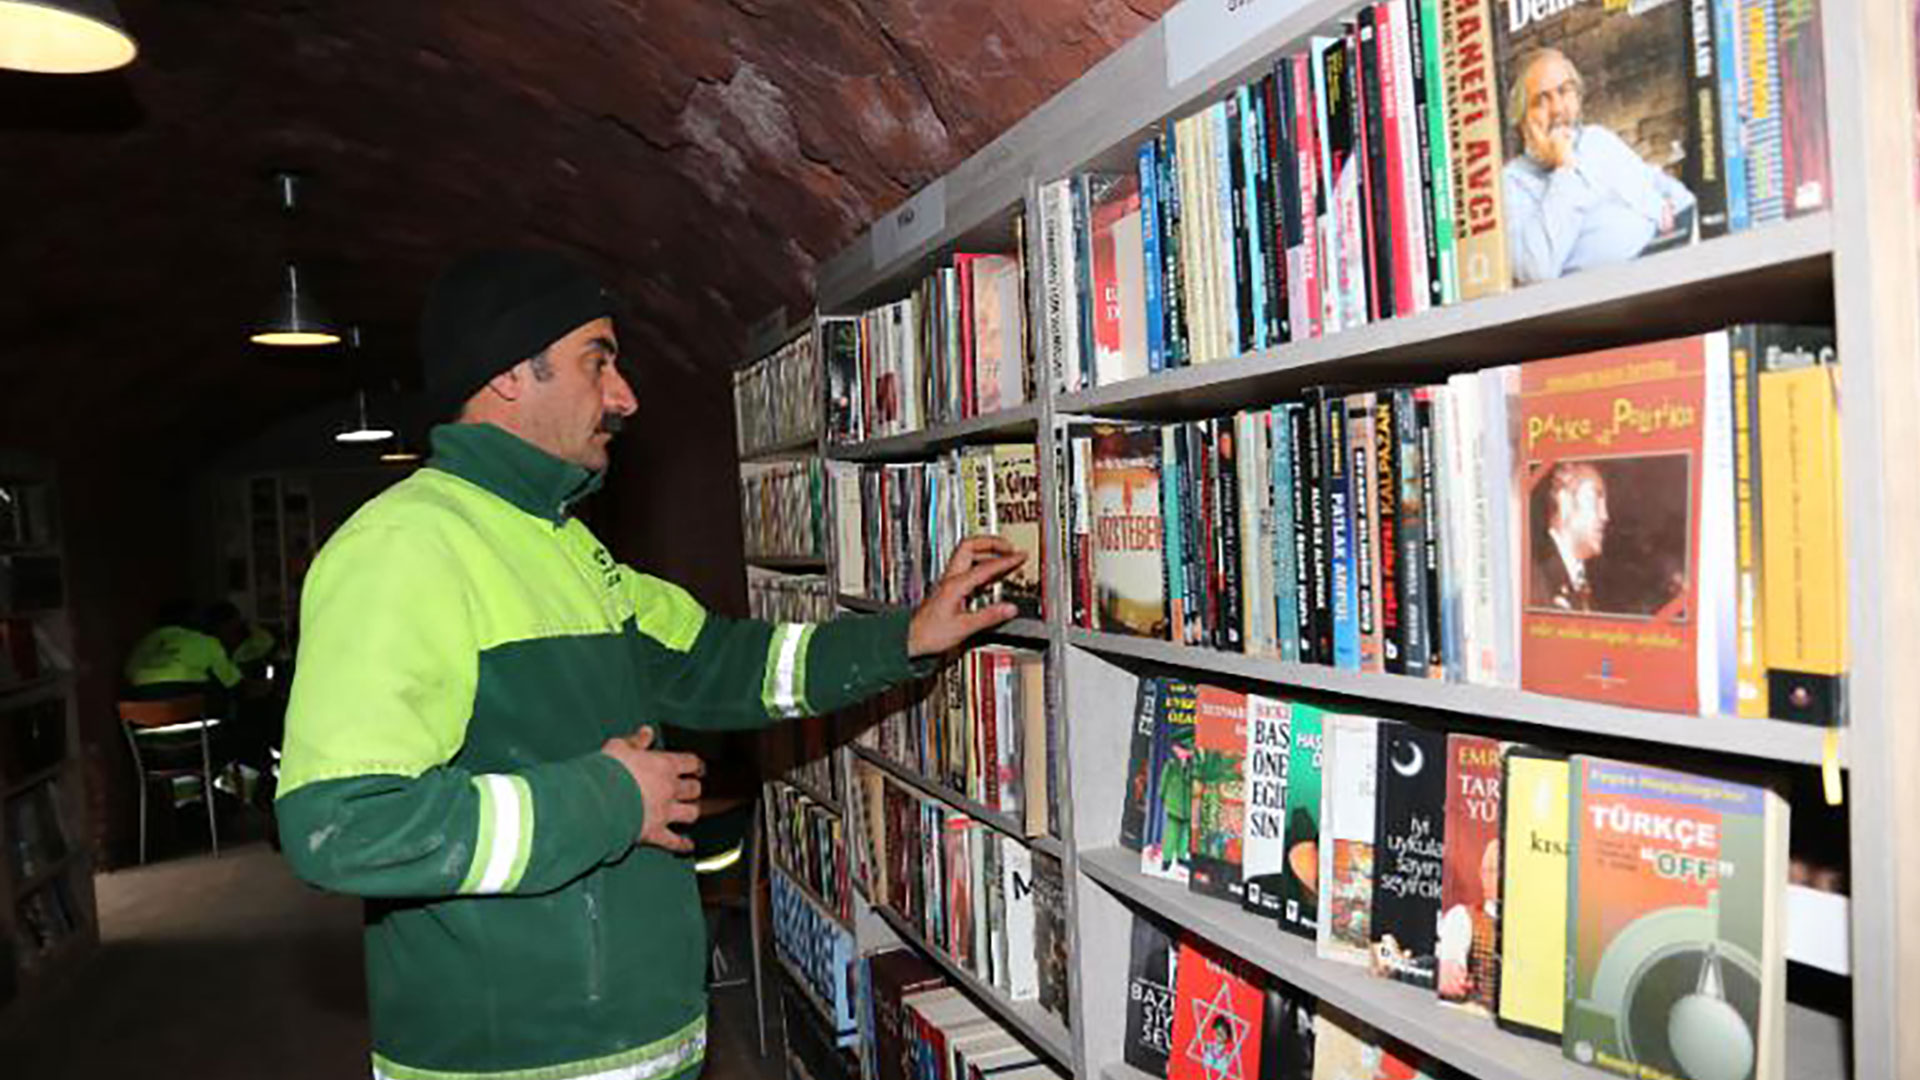 Ankara bin men library